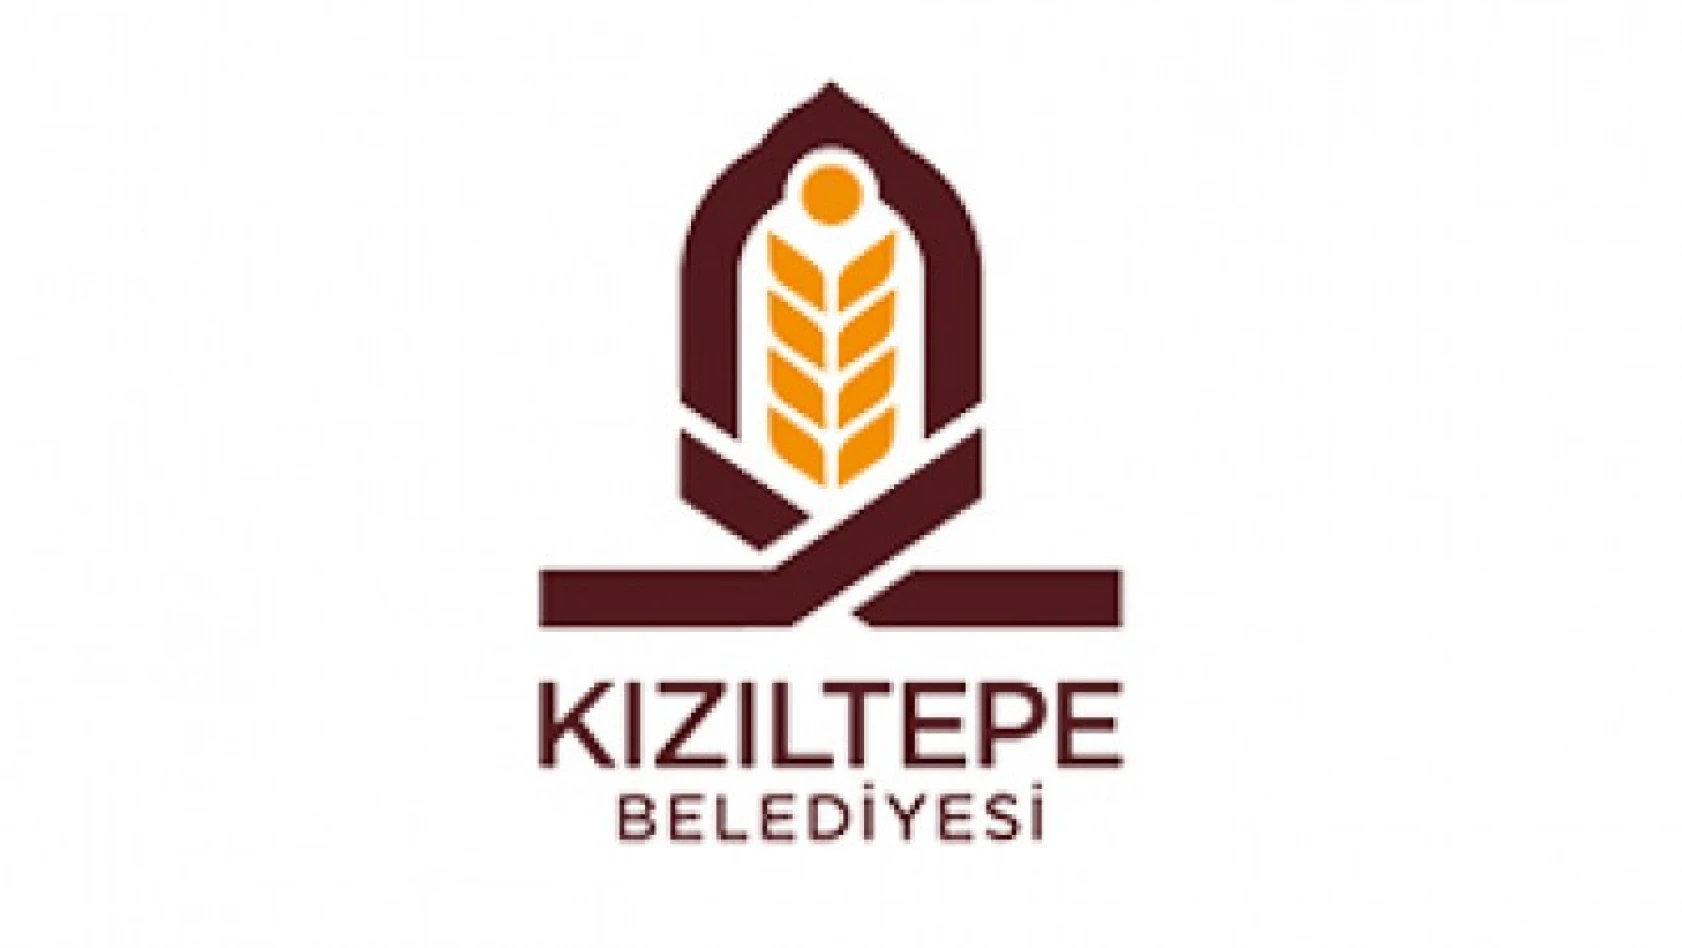 Kızıltepe Belediyesinden hizmet alımı